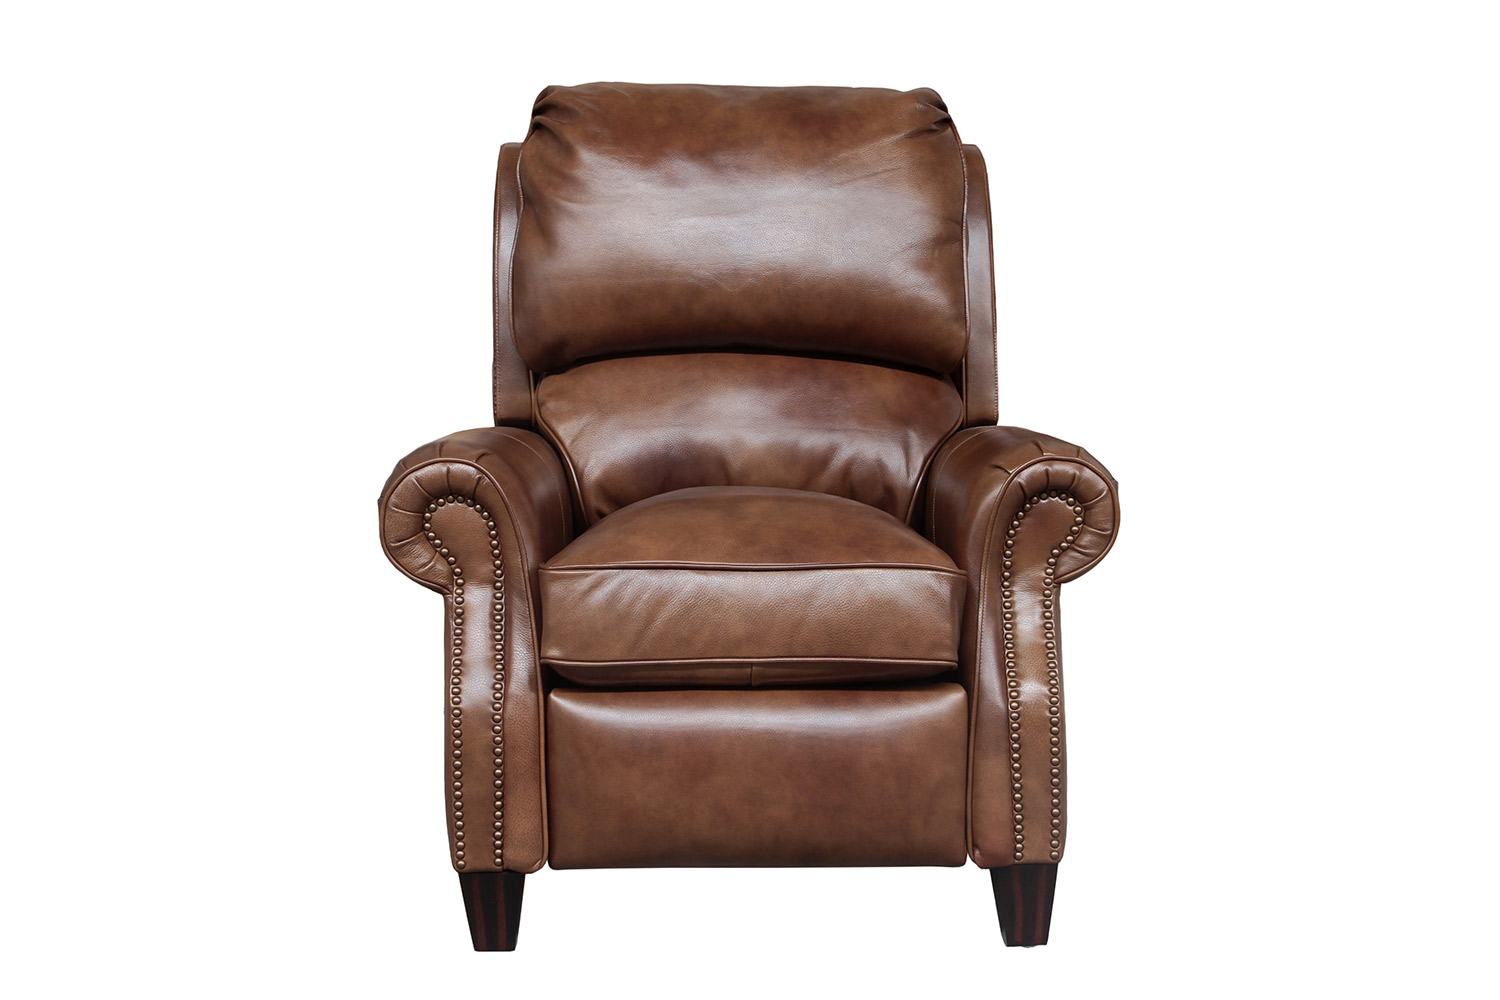 Barcalounger Churchill Recliner Chair, Churchill Leather Recliner